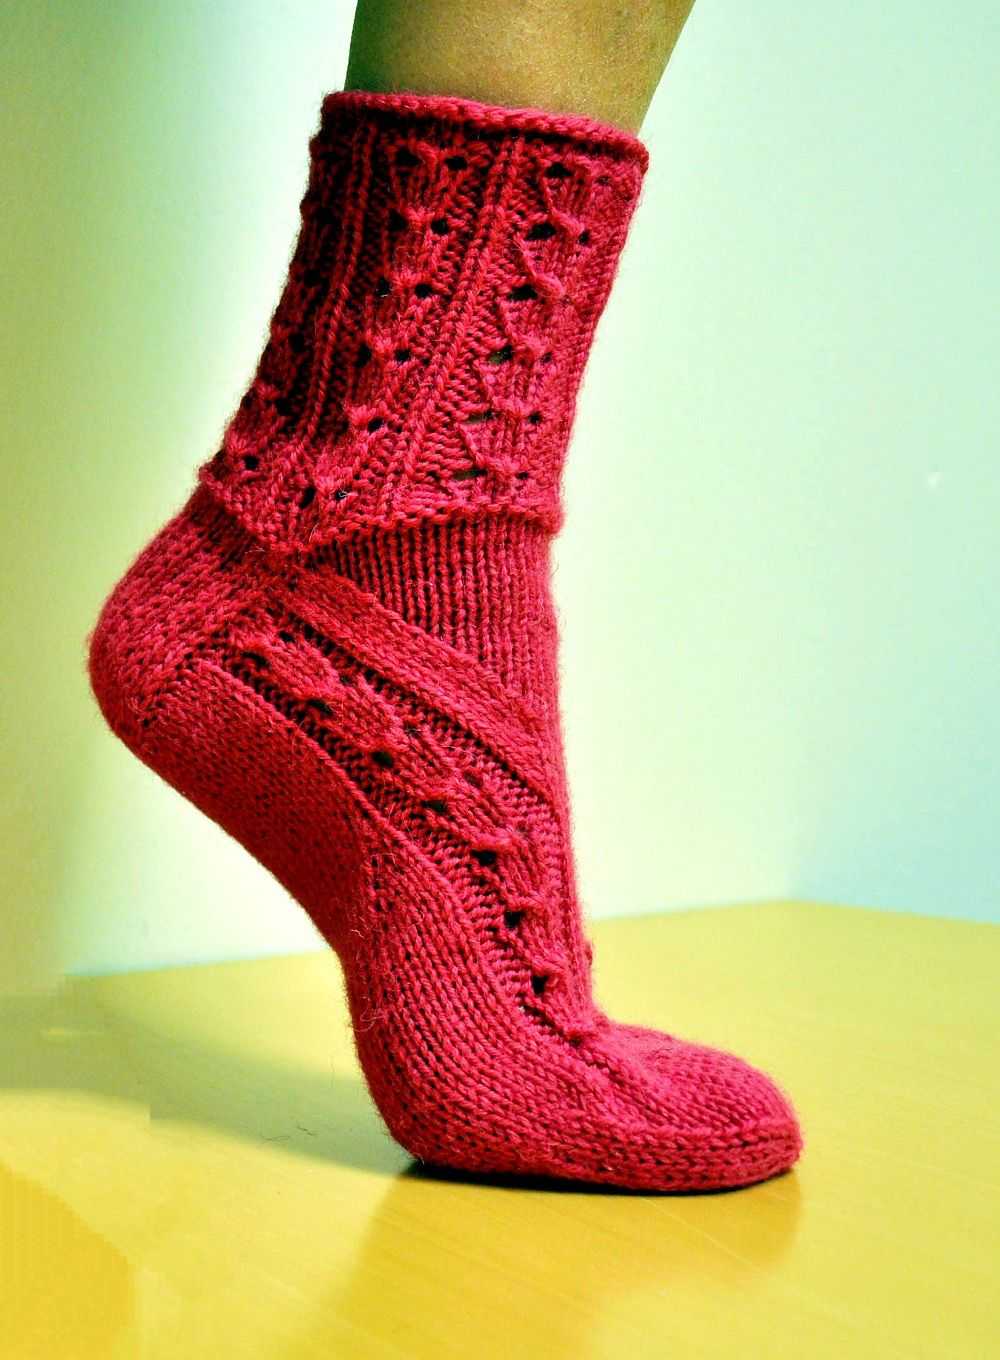 Узоры для носков спицами: 12 простых и красивых вариантов со схемами - своими руками